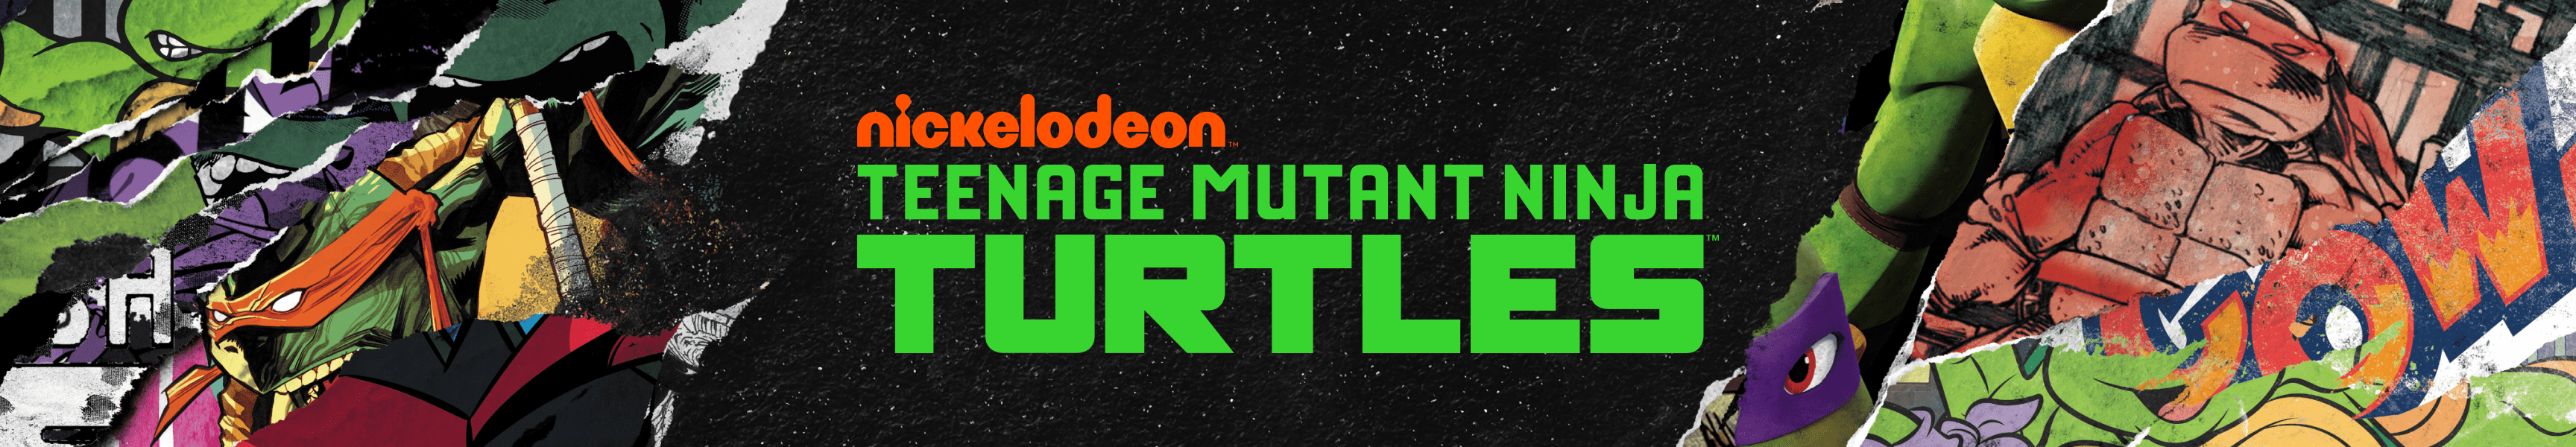 Teenage Mutant Ninja Turtles Coasters